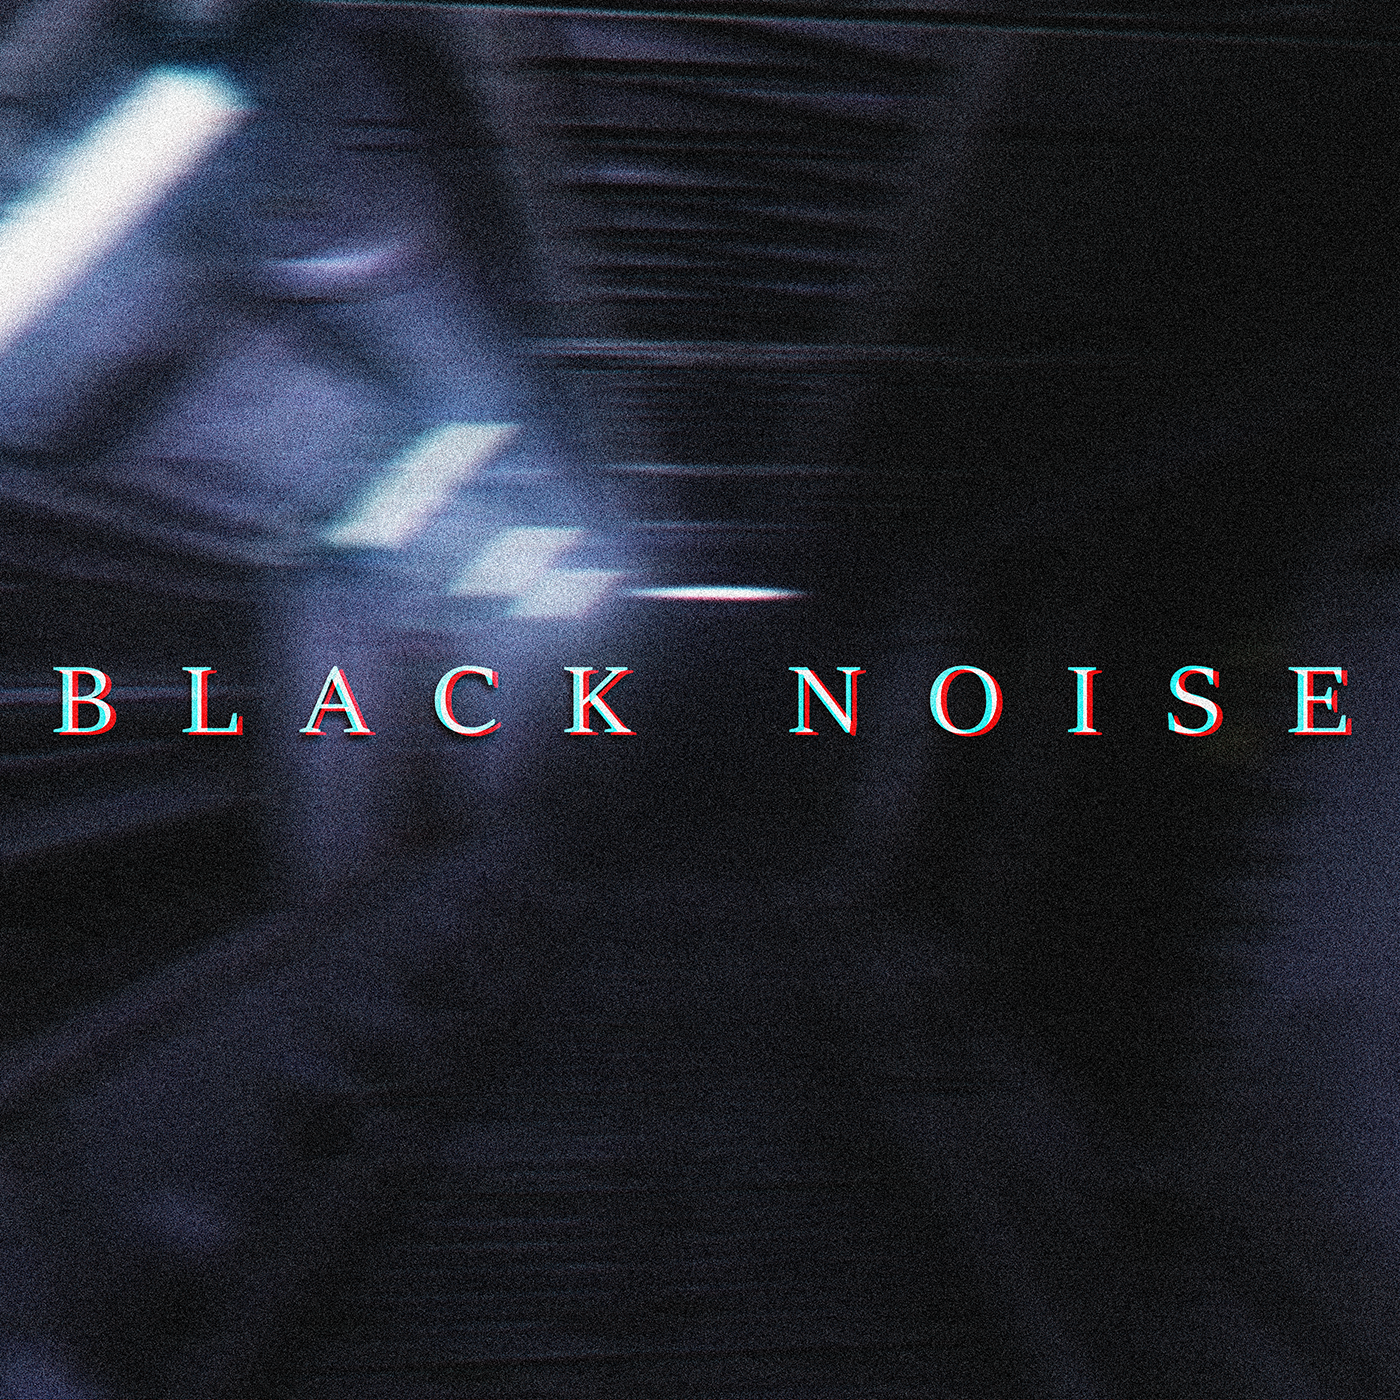 dslr dark noise